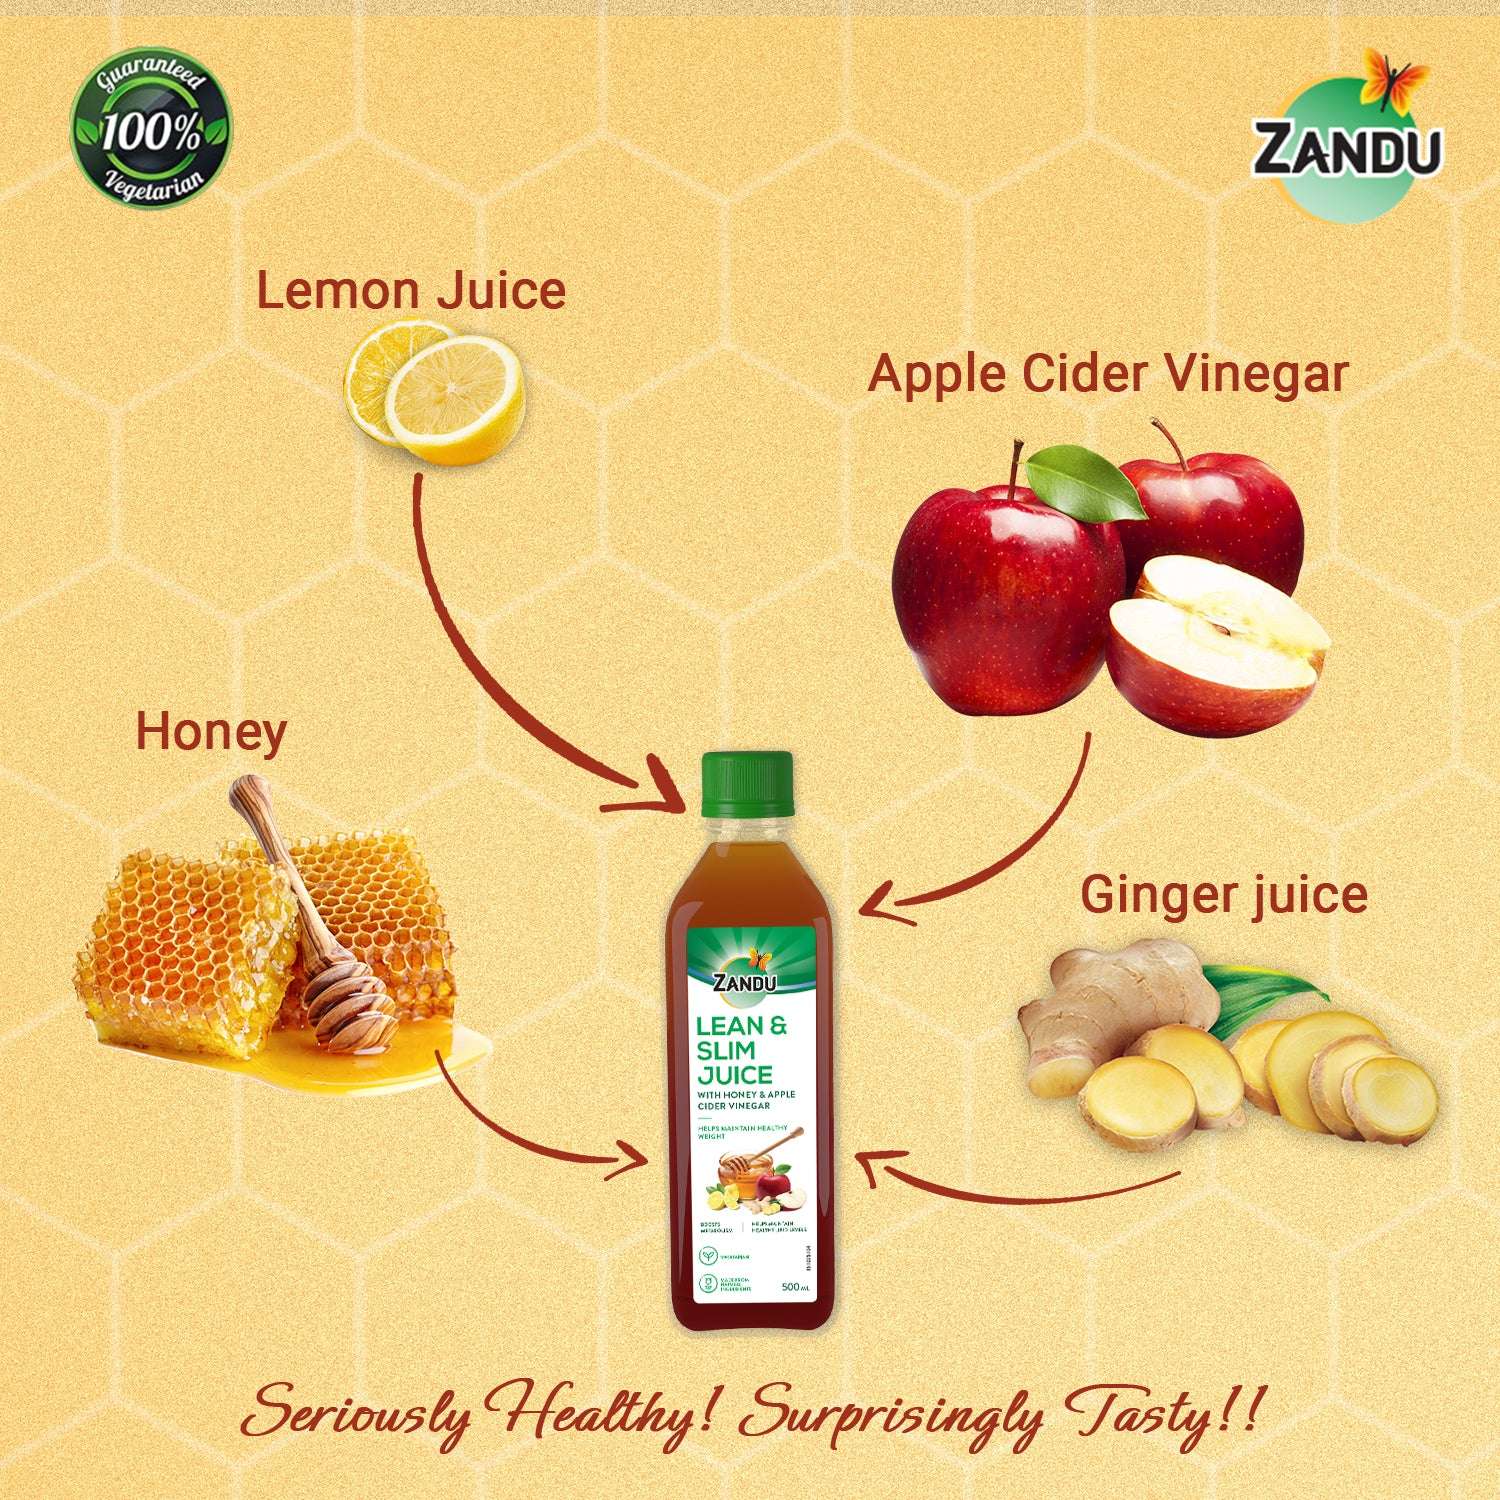 Zandu Gift juice Box Ingredients